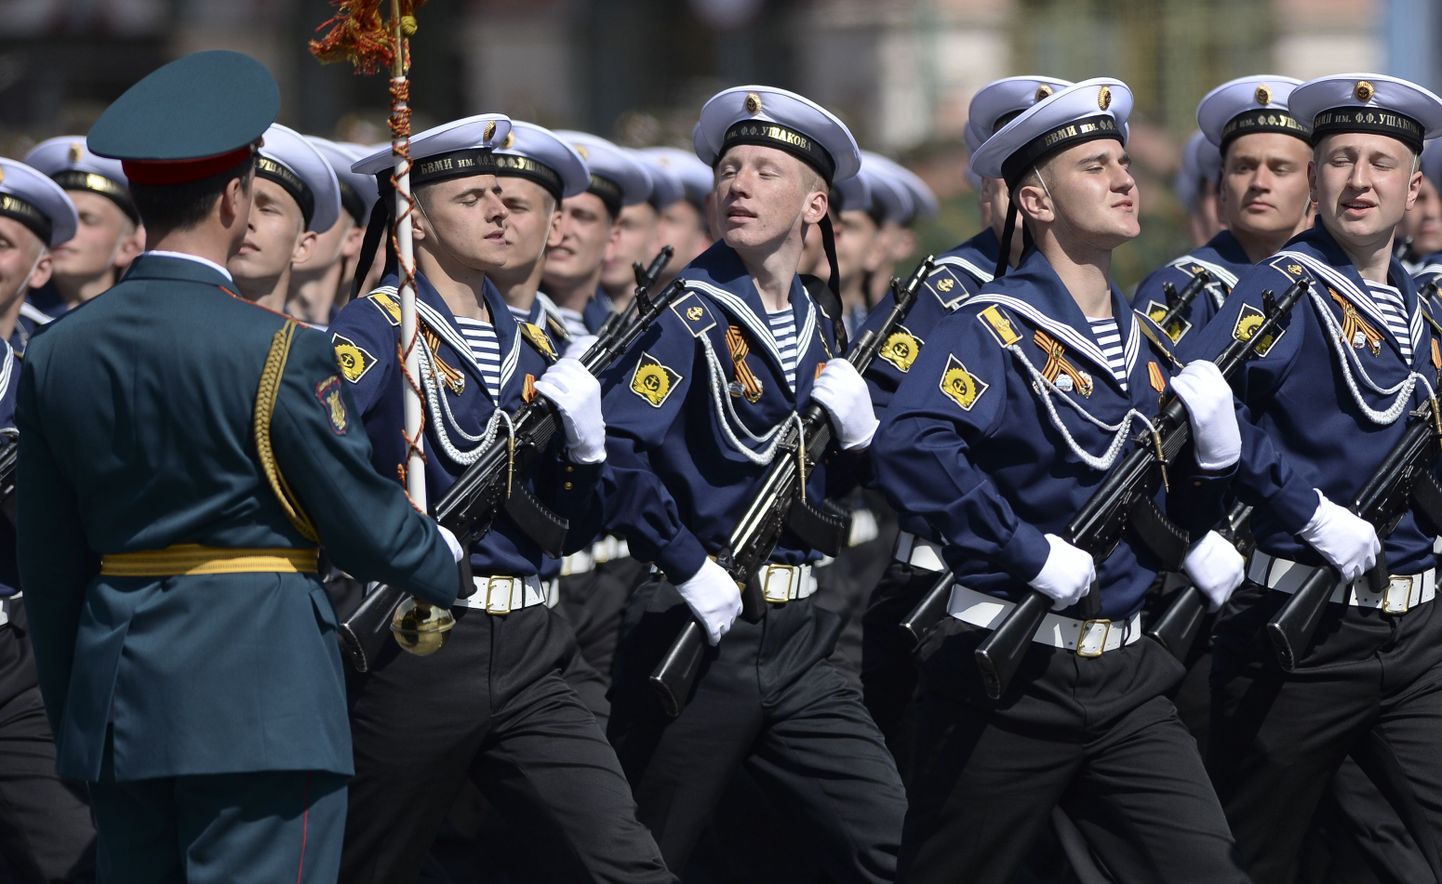 Vene sõdurid võidupüha paraadil